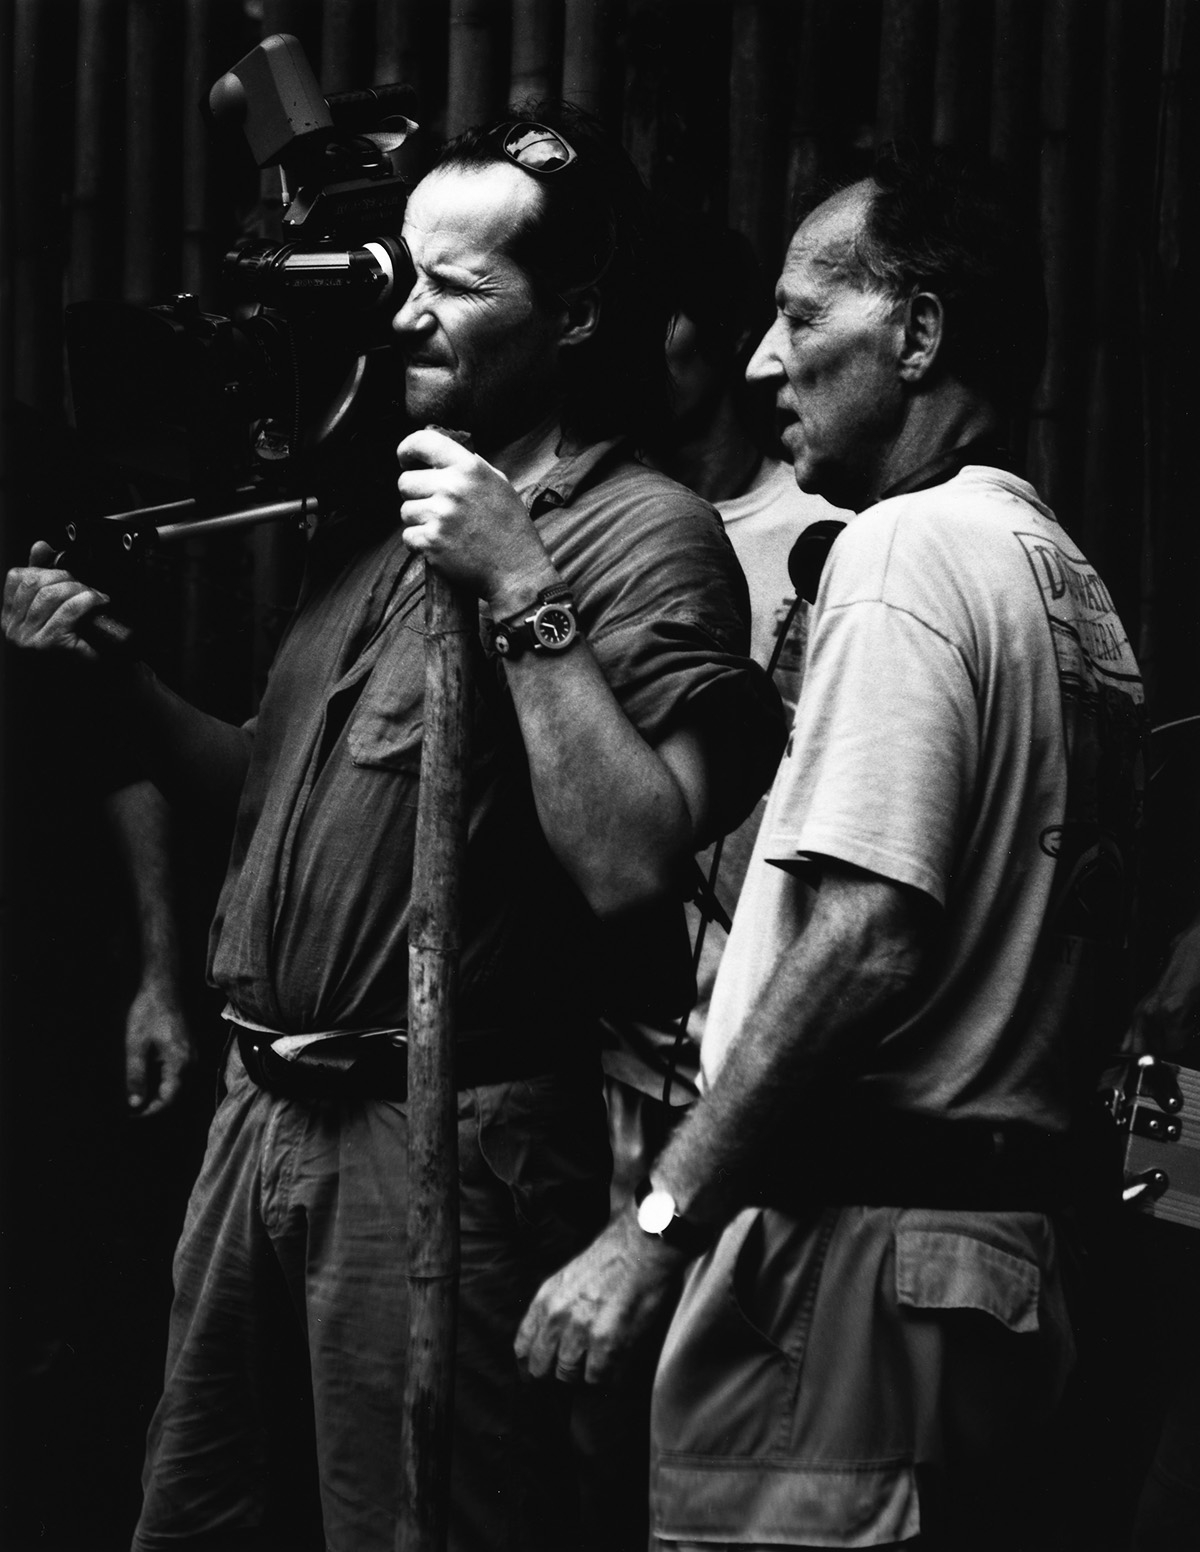 Schwarz-weiß-Foto: Der Regisseur steht neben seinem Kameramann, der durch den Sucher blickt.